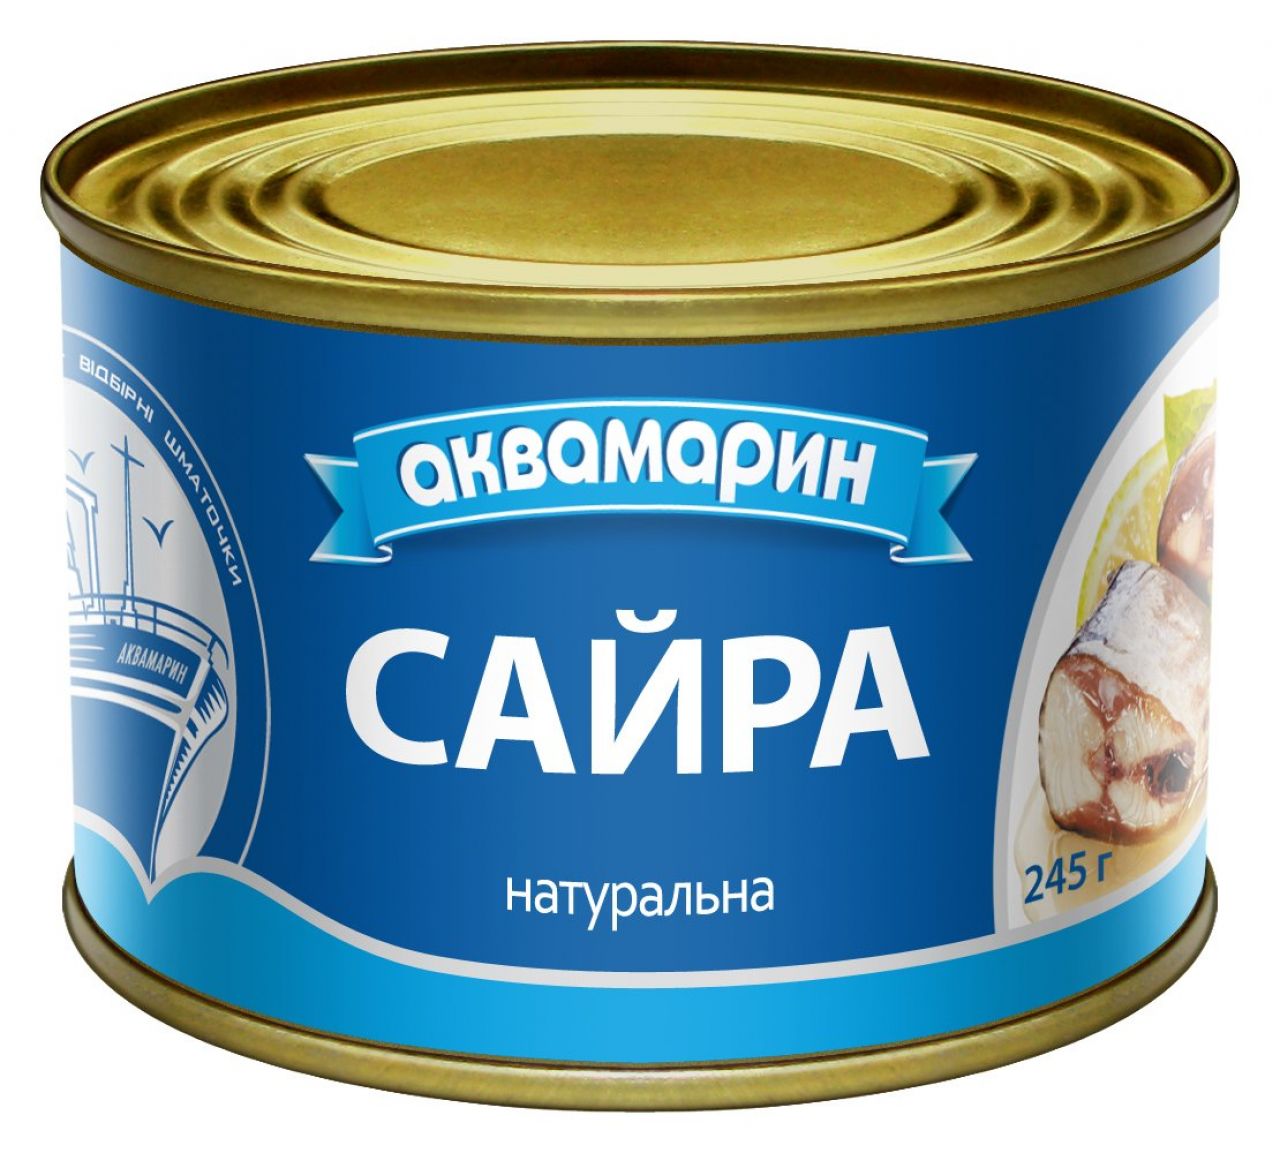 Шепетівських продавців просять вилучити з обігу підробні рибні консерви